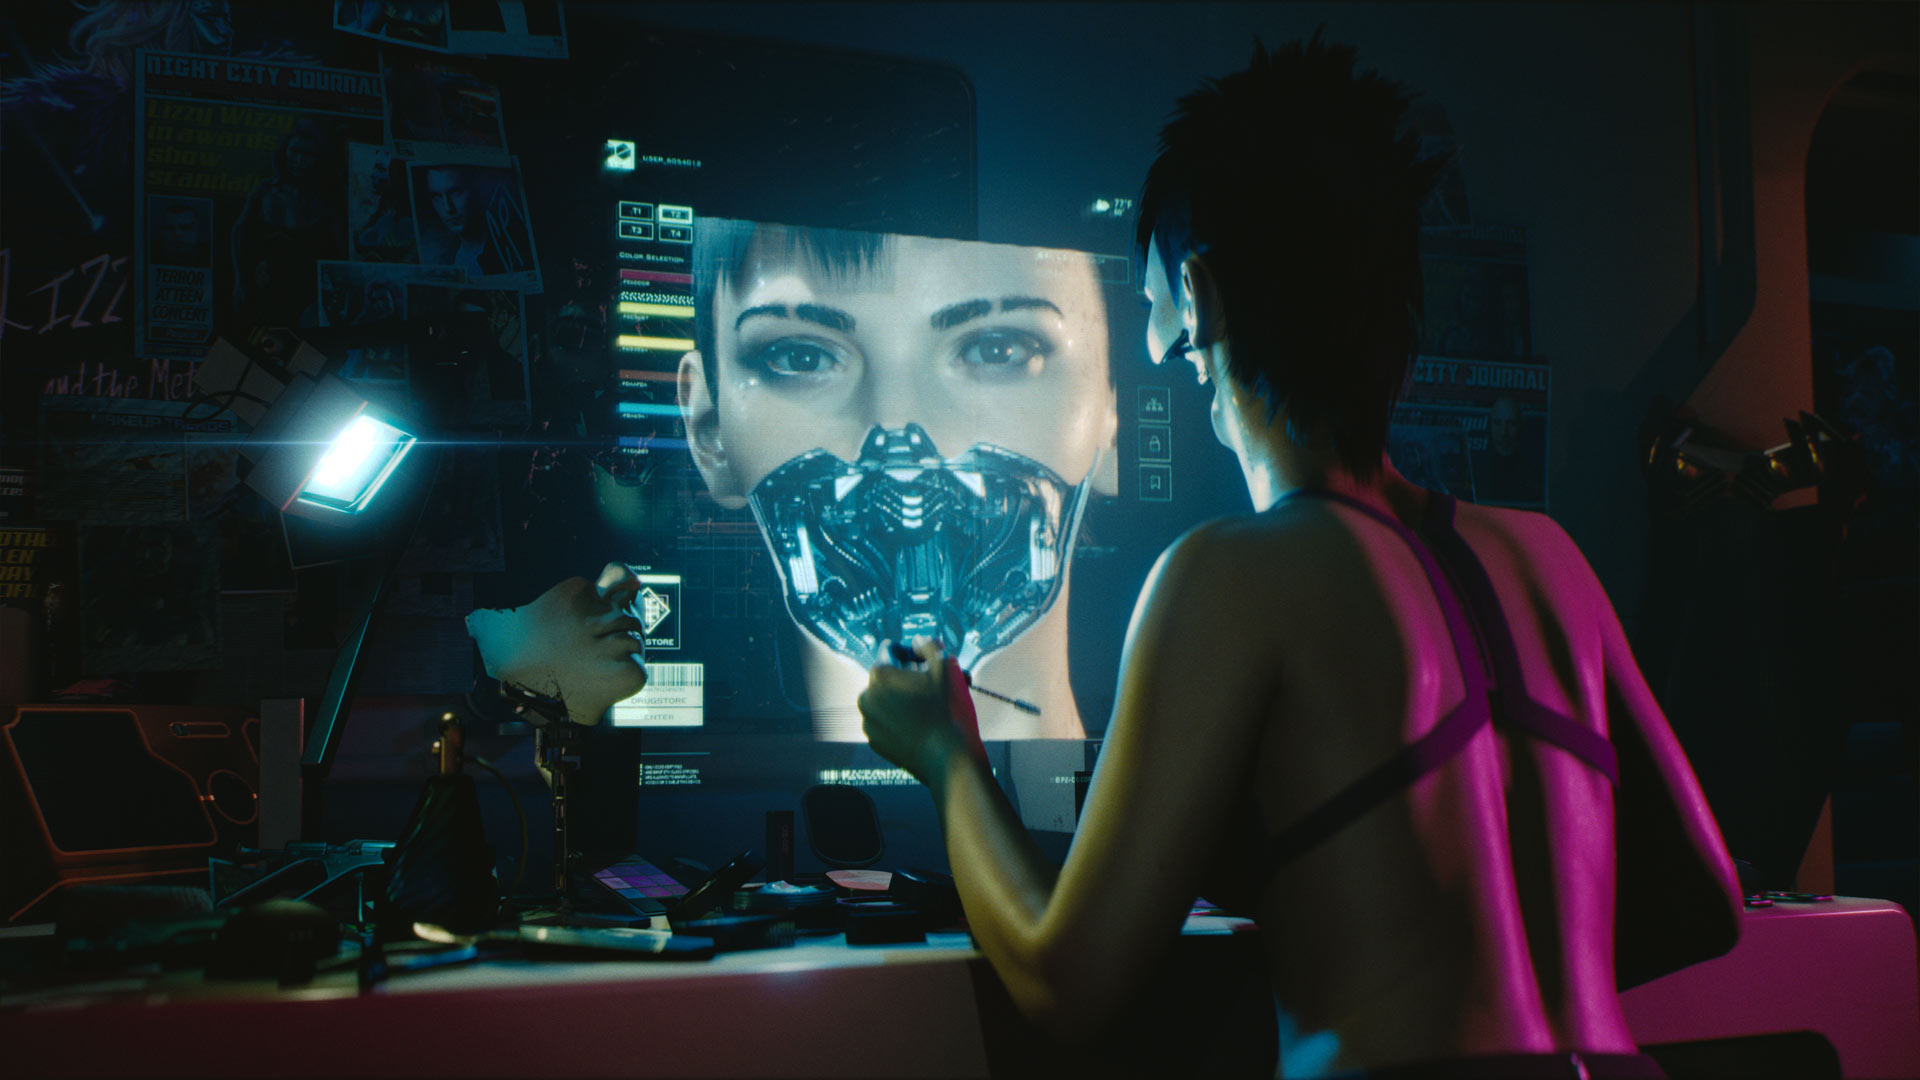 Desenvolvedor confirma que Cyberpunk 2077 será em primeira pessoa